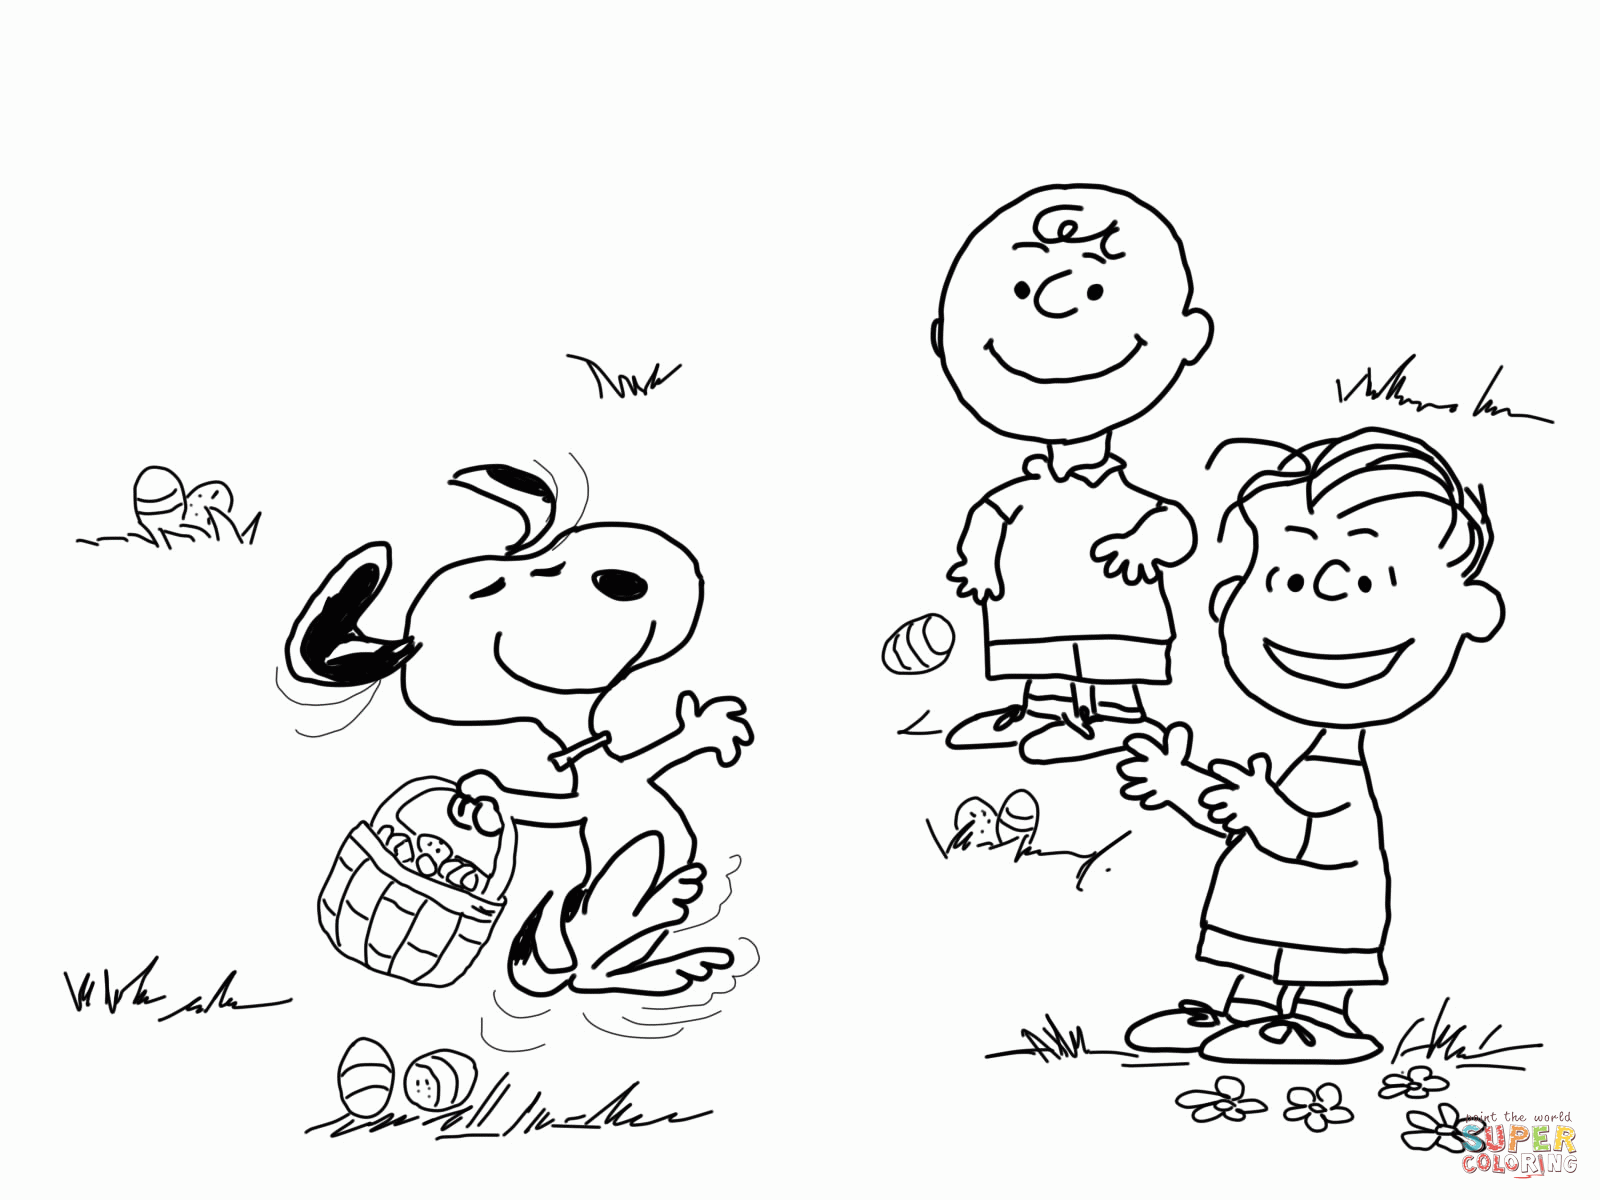 Great Pumpkin Charlie Brown coloring page | Free Printable ...